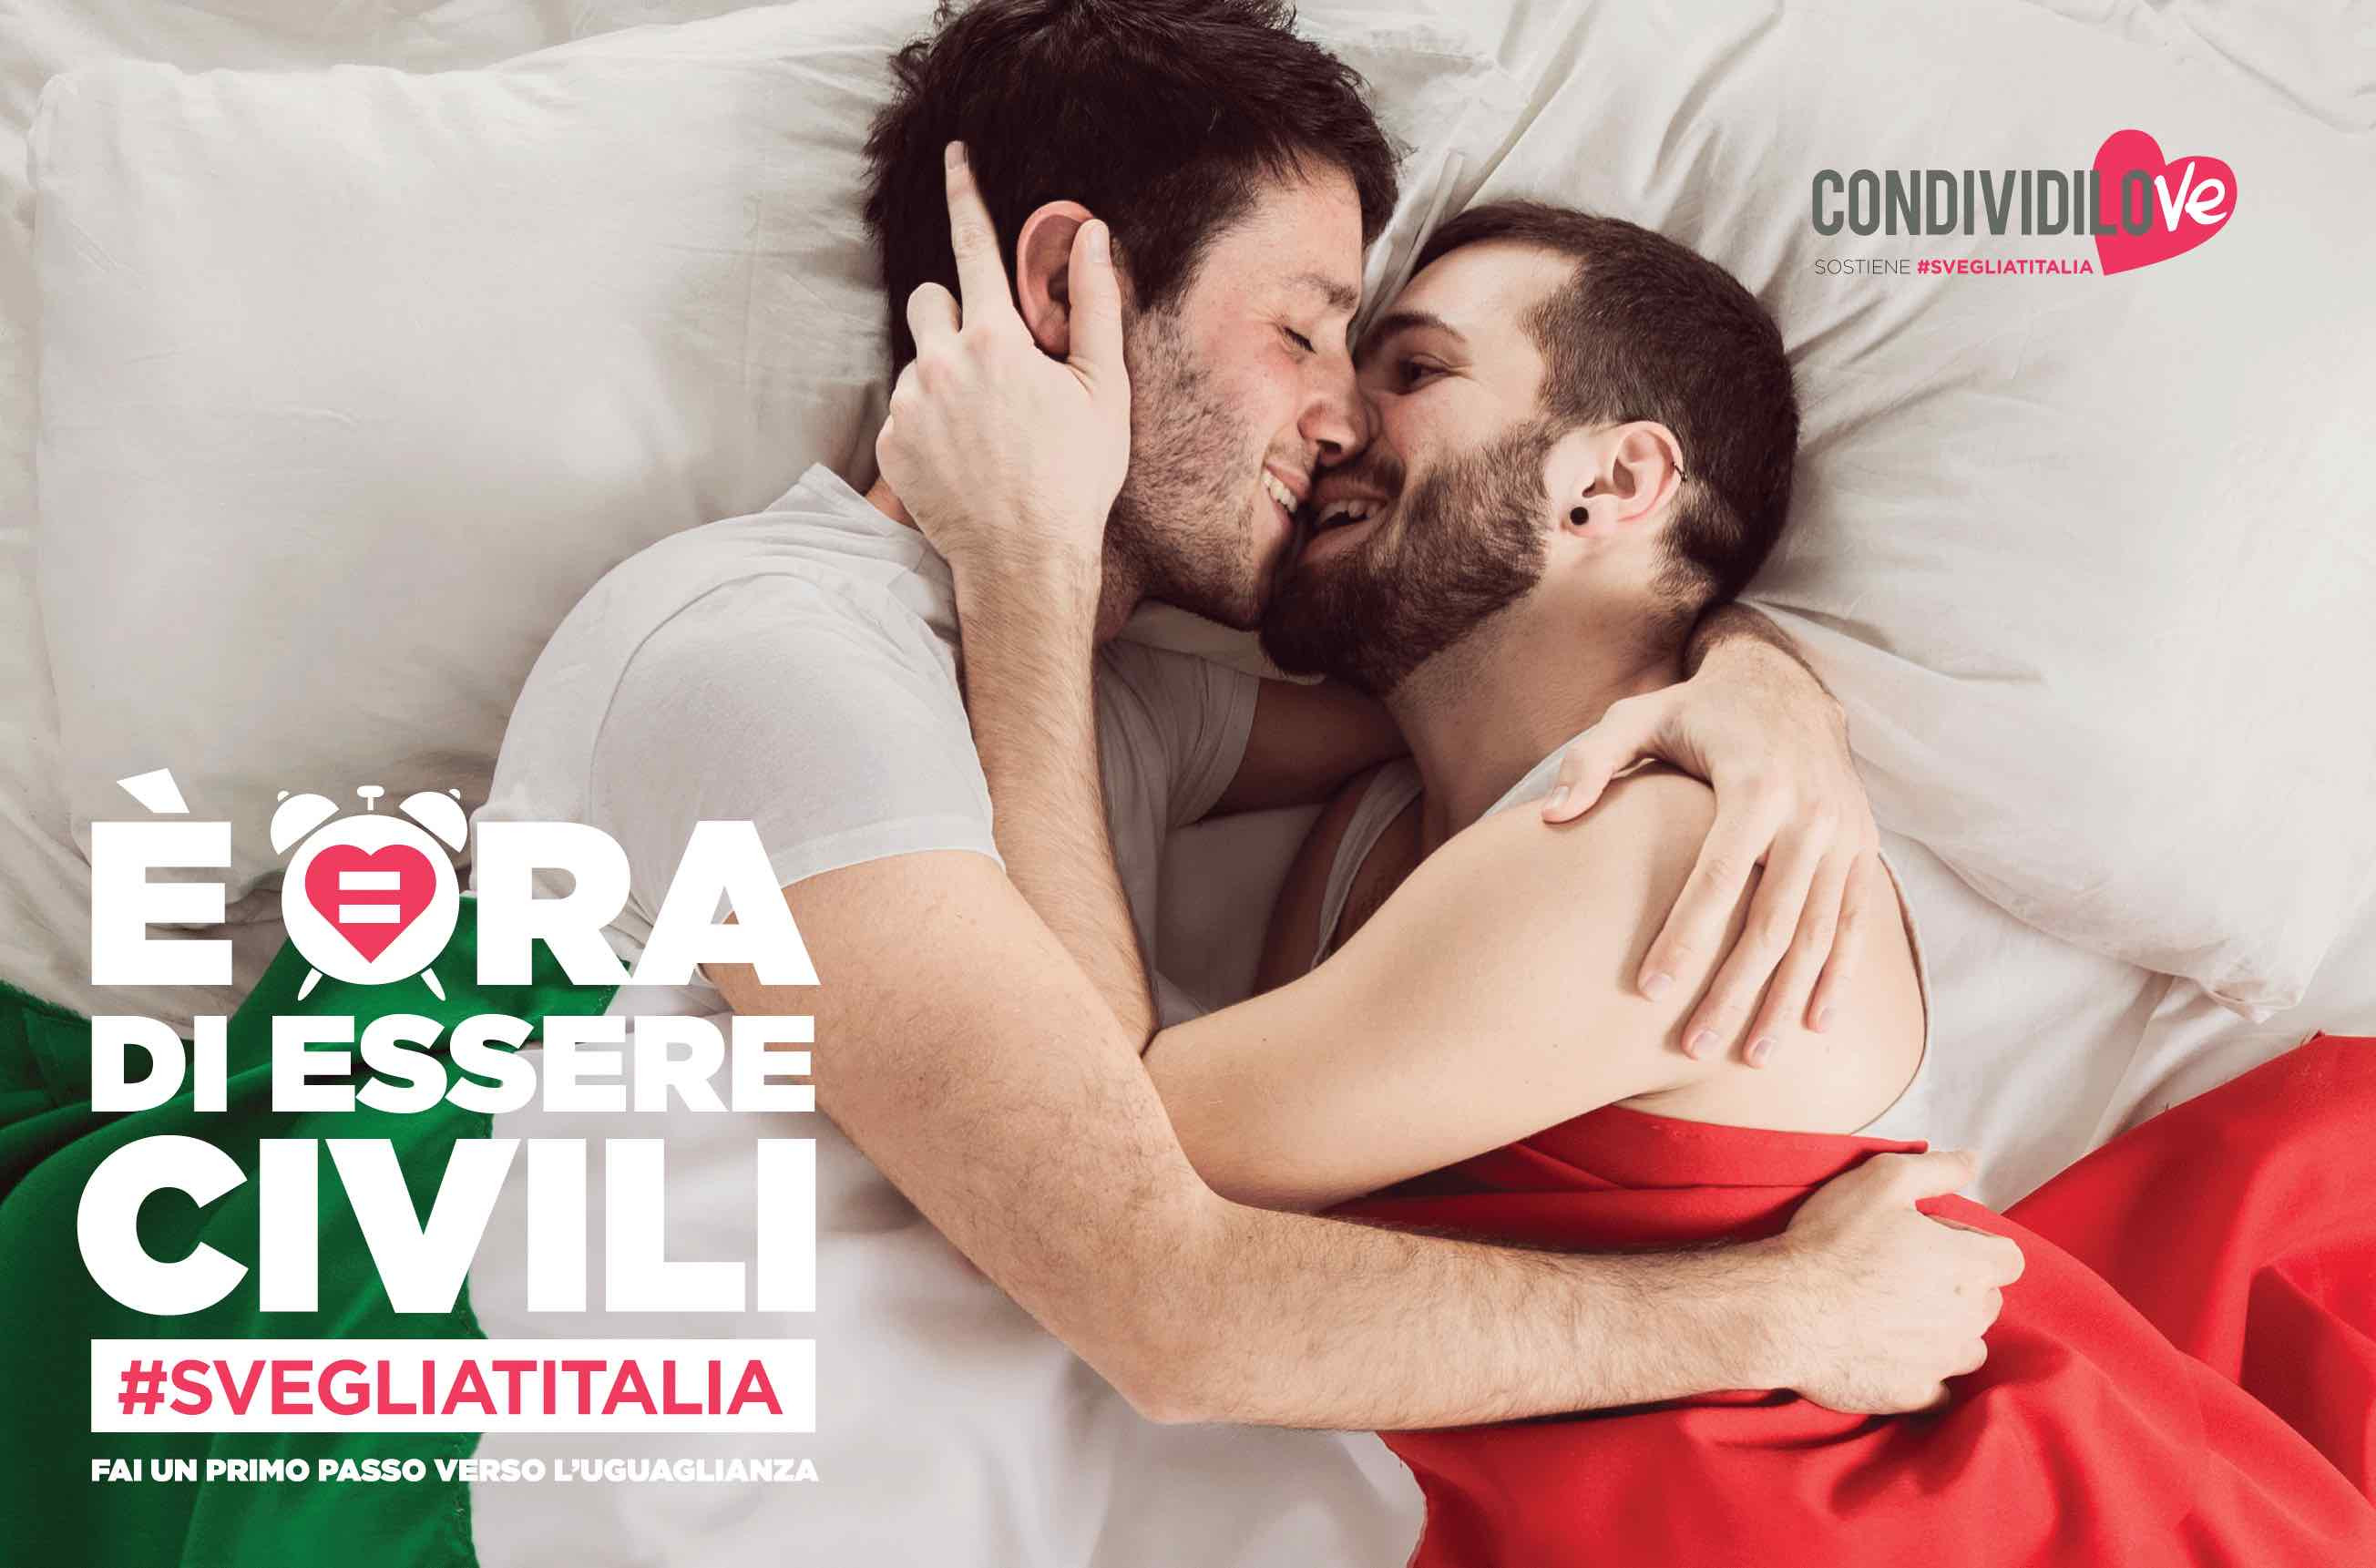 Lush partecipa alla campagna opensource #SvegliatItalia